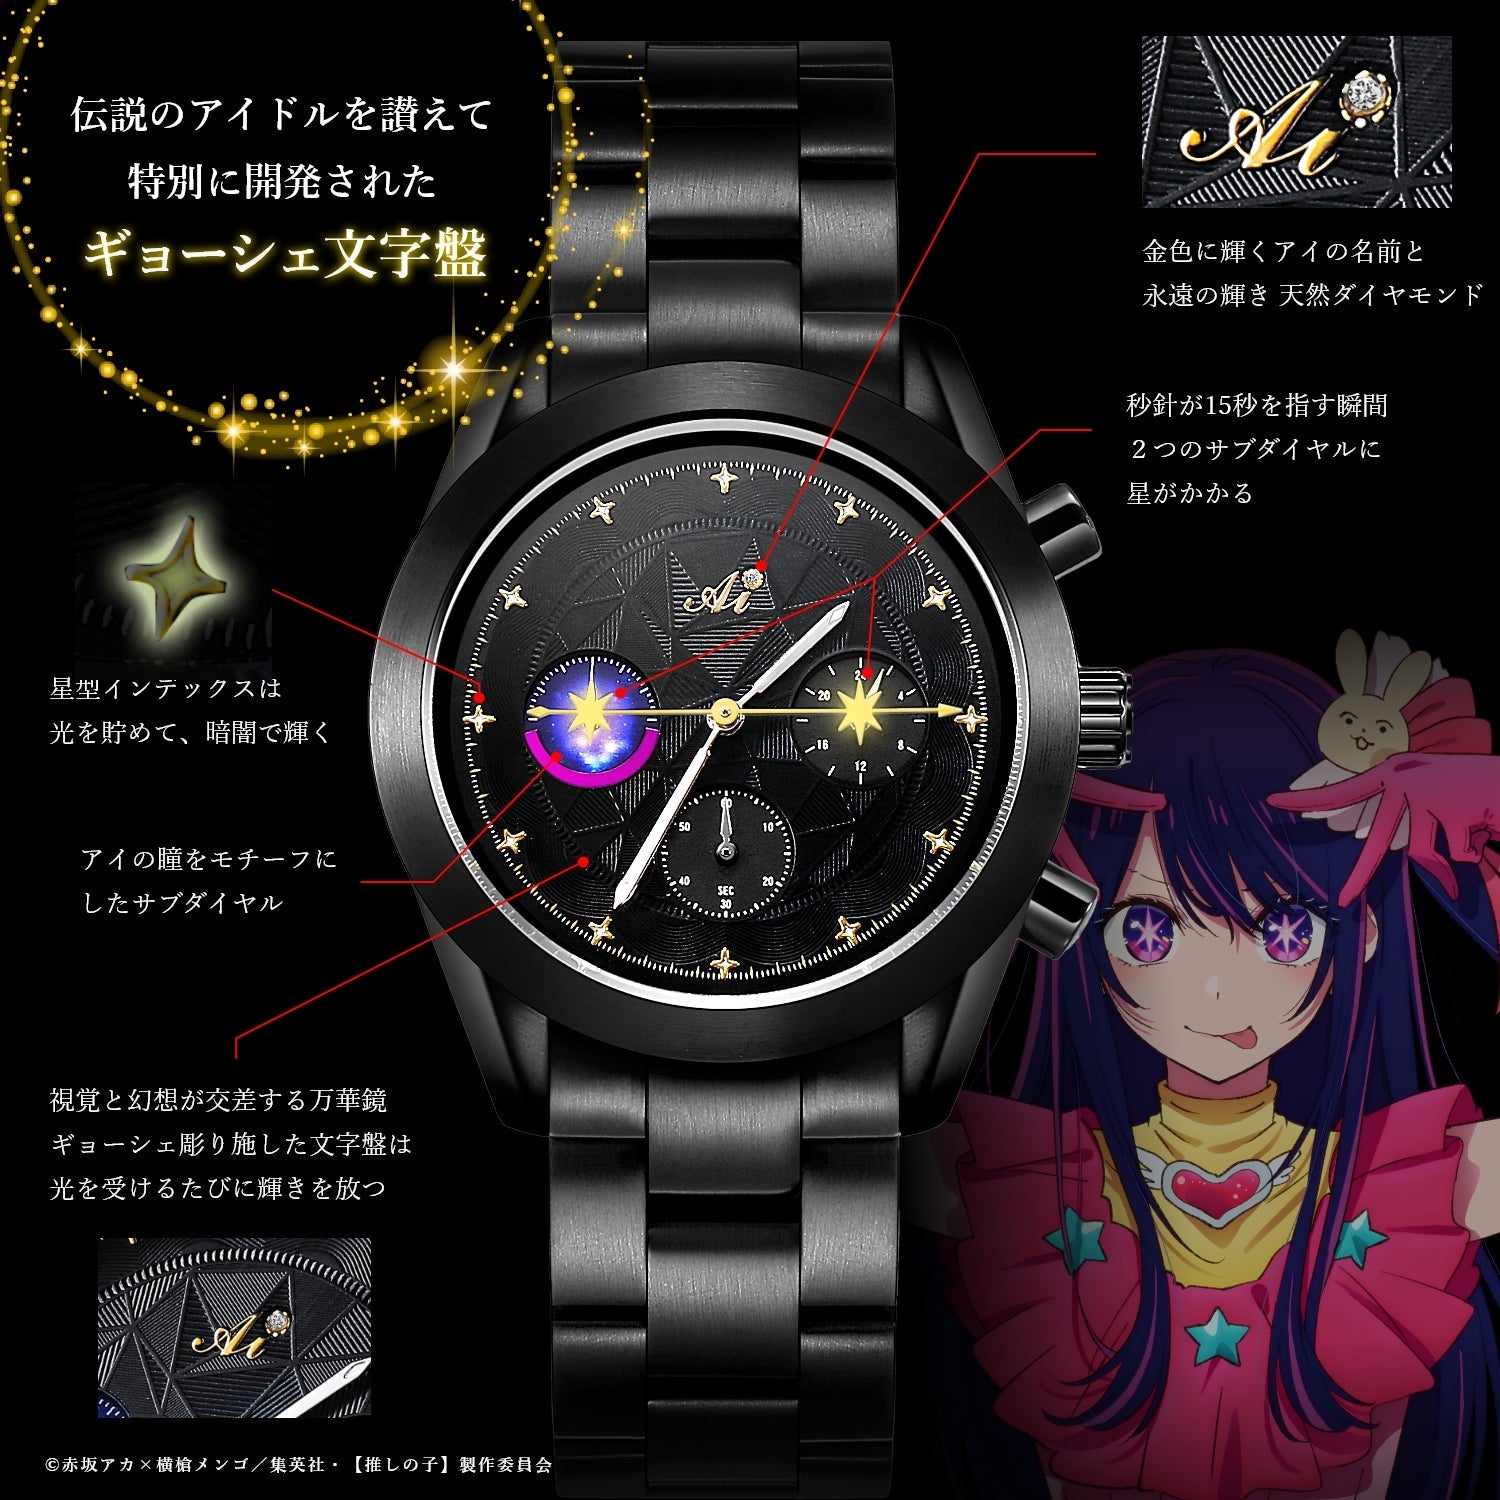 アニメ『【推しの子】』天然ダイヤ クロノグラフ腕時計 アイ - 公式通販サイト「アニメコレクション/Anime Collection」